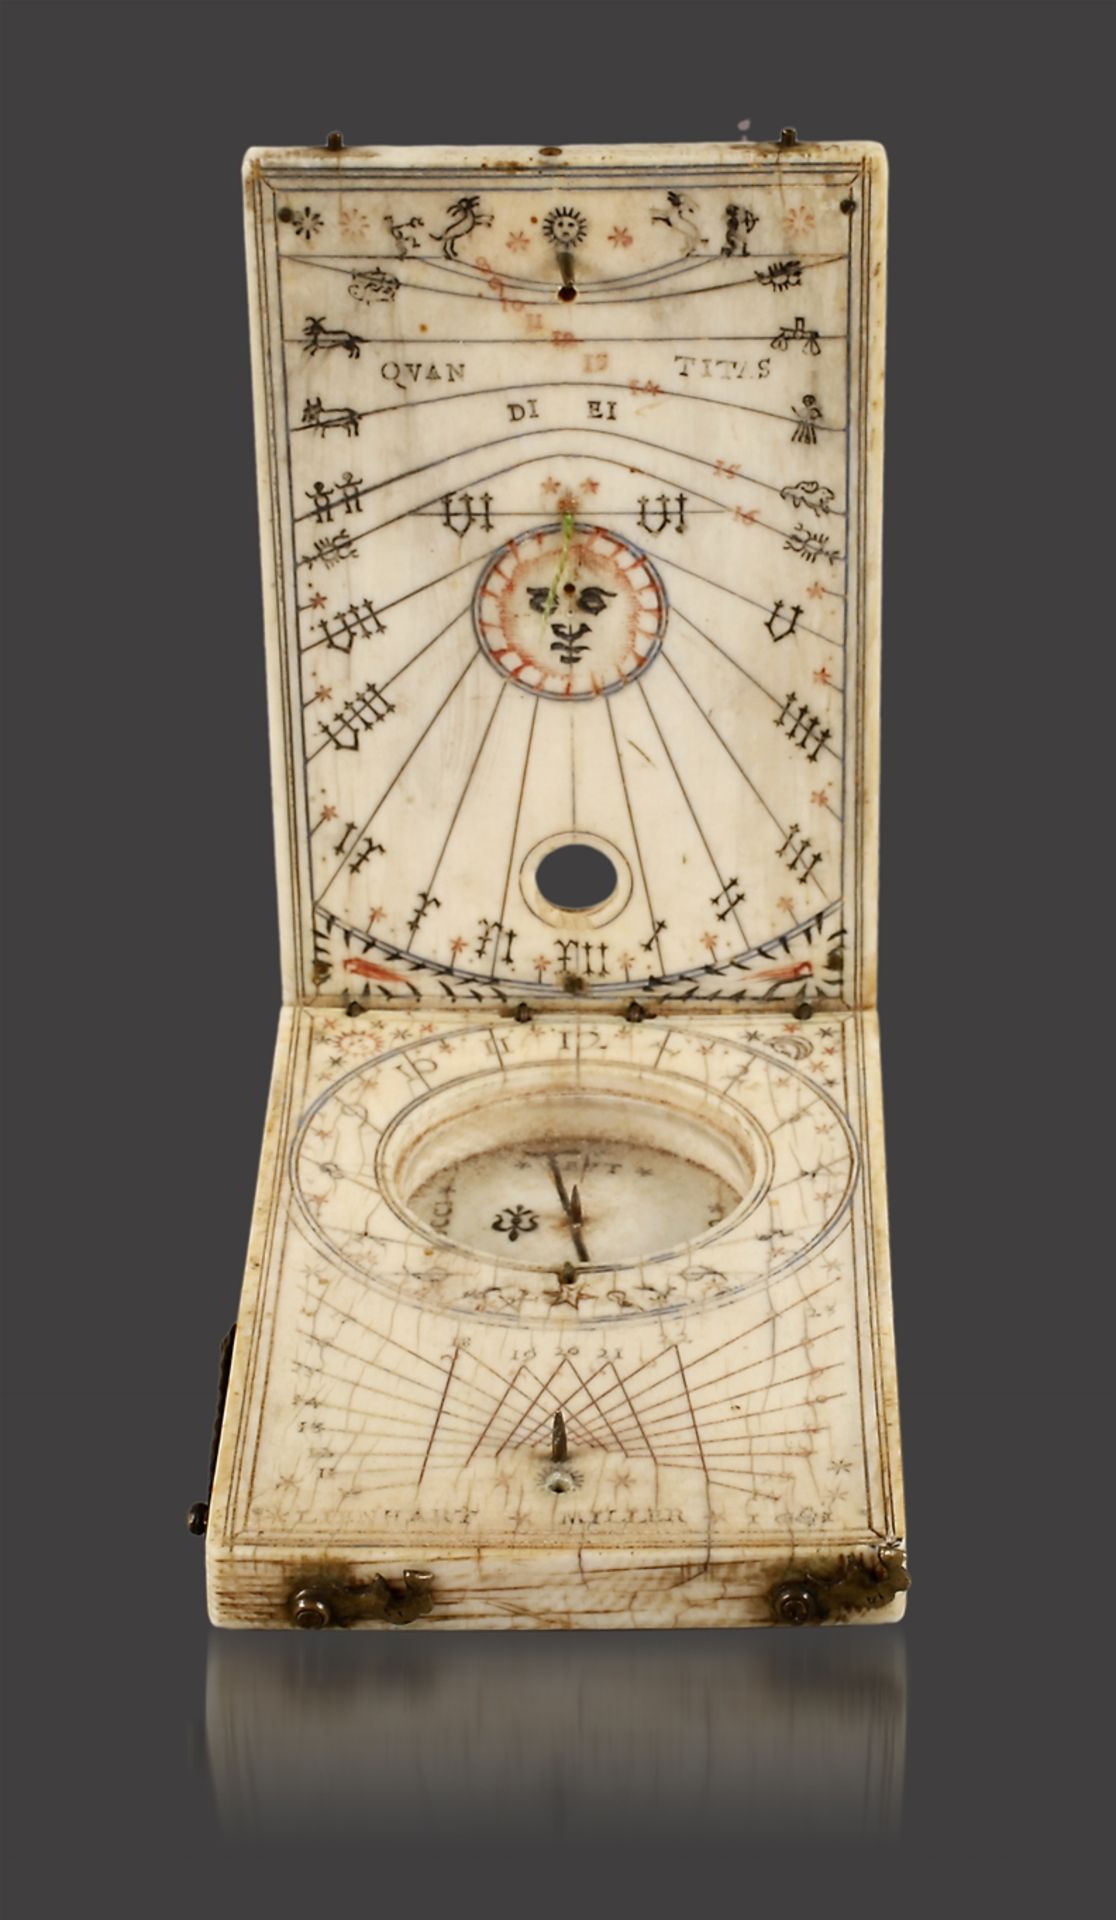 Äquatorial-Klapp-Sonnenuhr Leonhard Miller 1611signiert Lienhart Miller und datiert 1611, klappbares